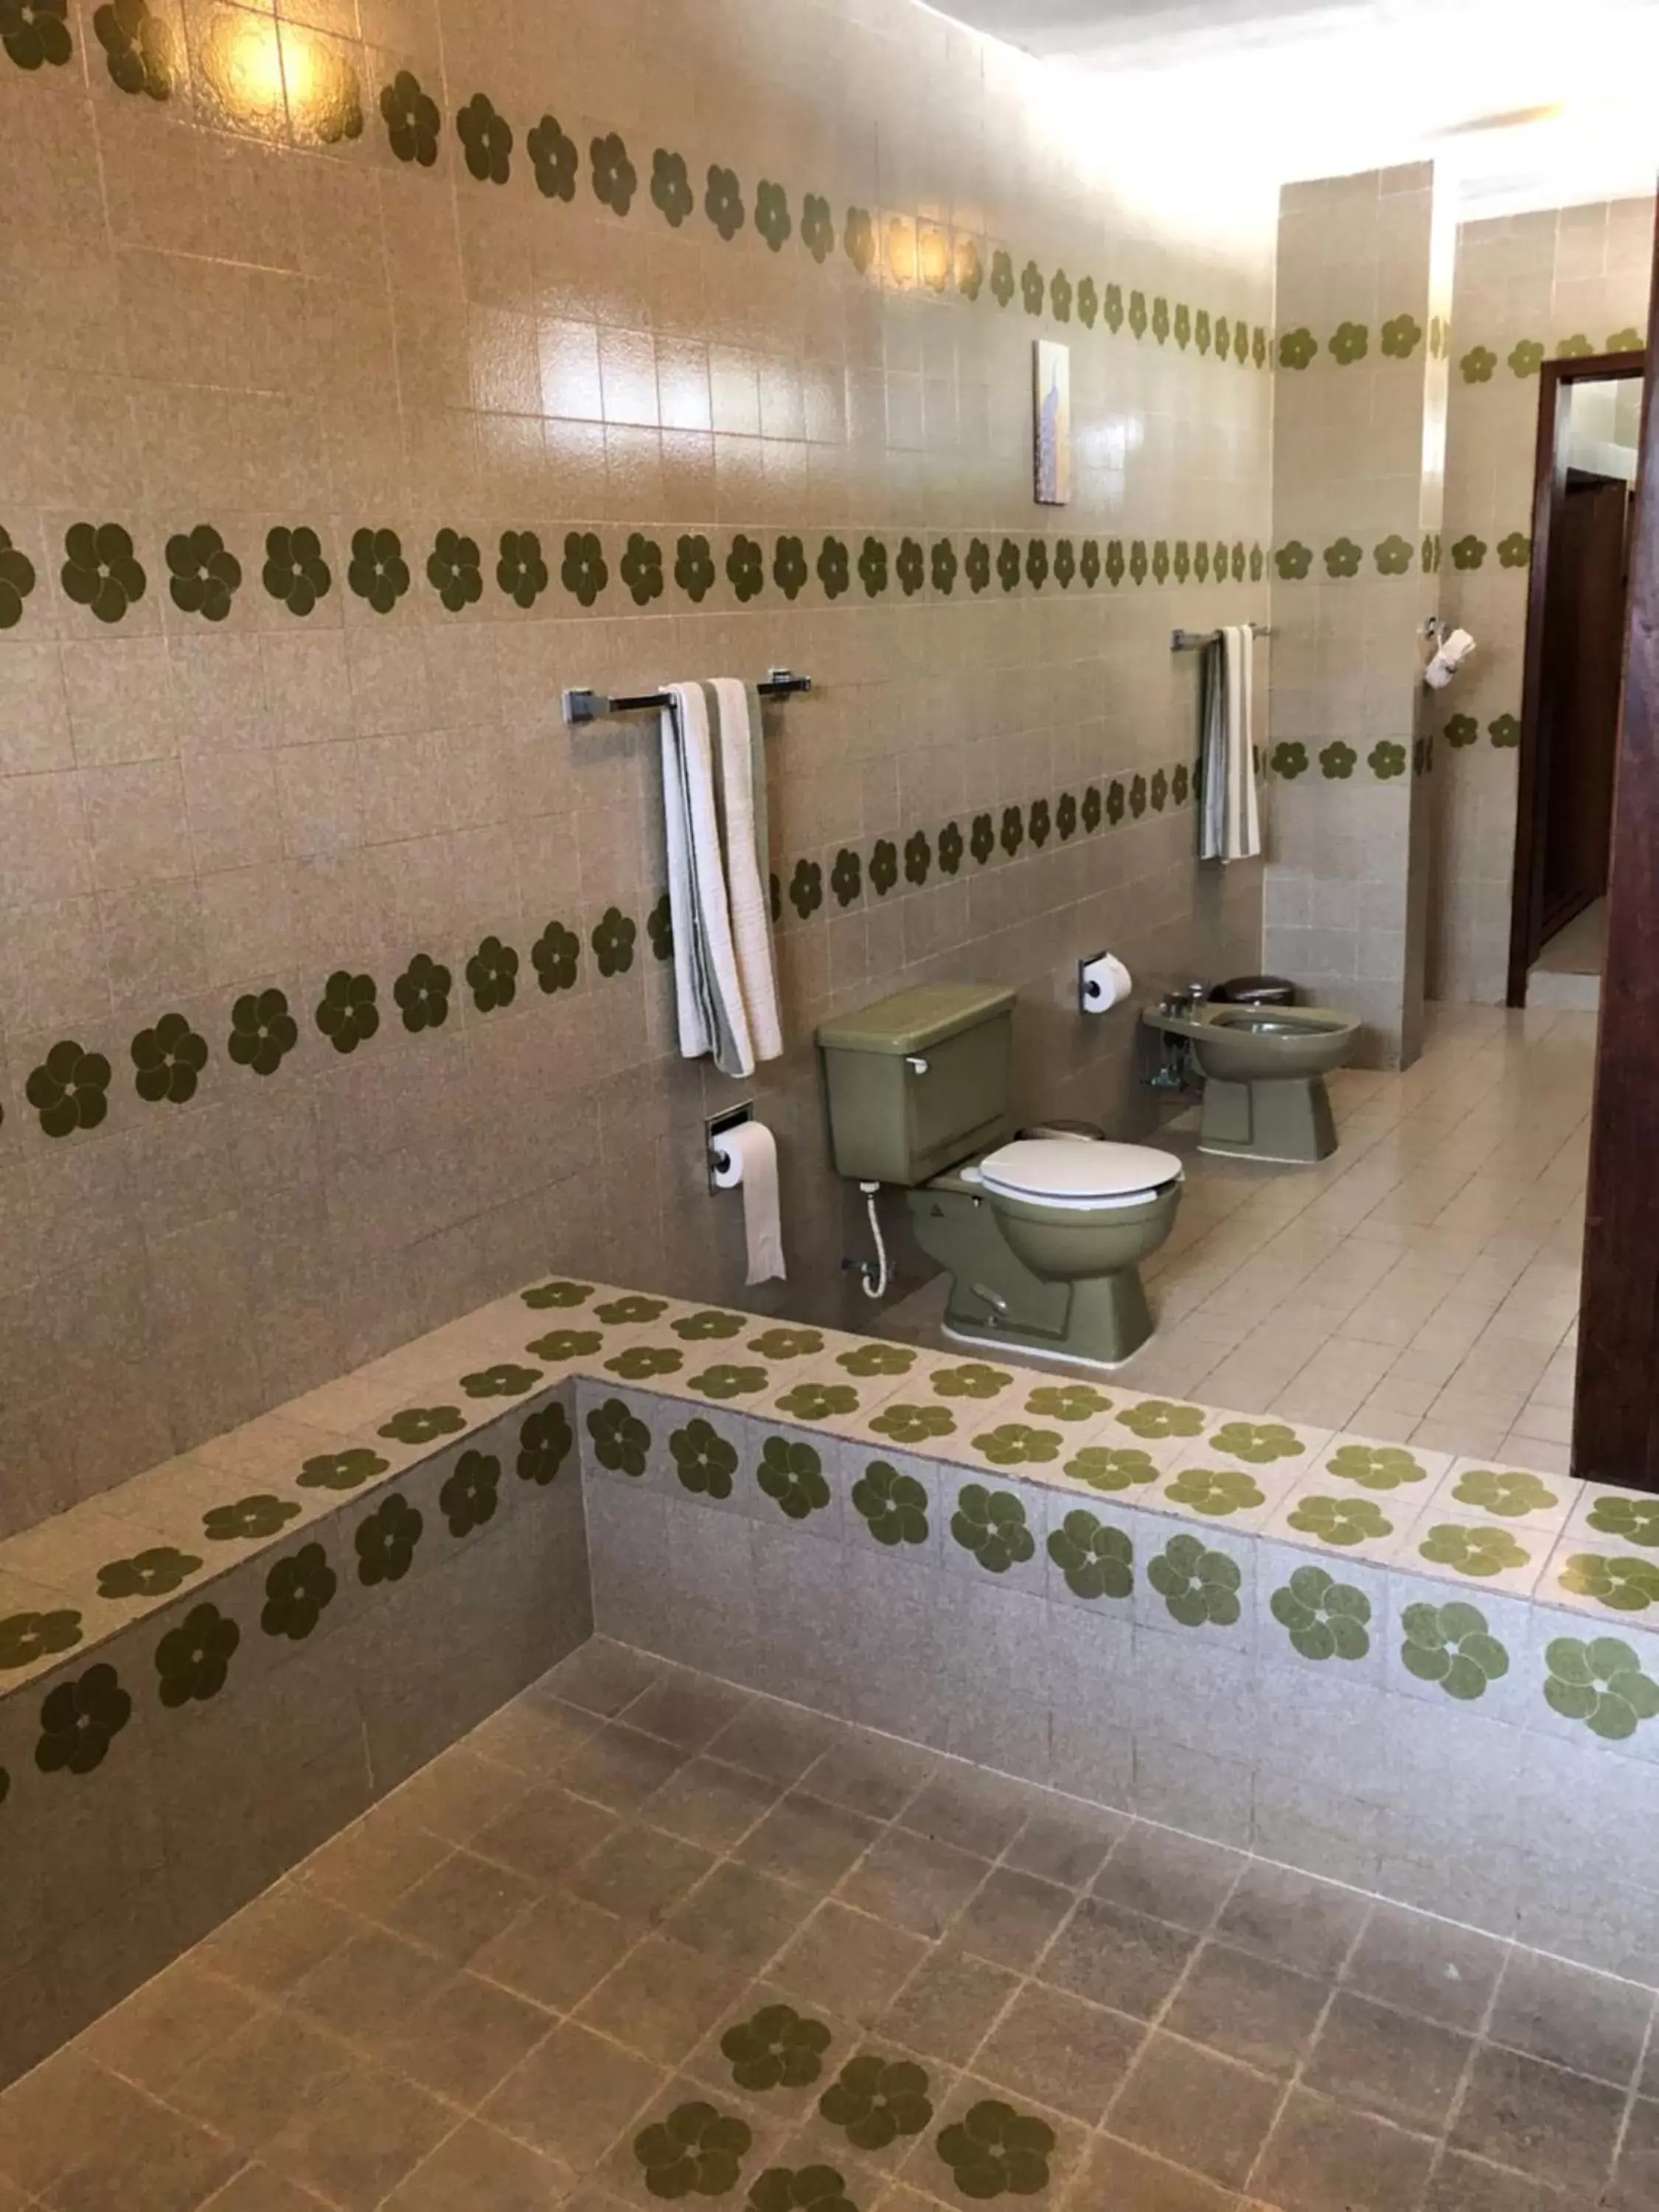 Shower, Bathroom in Villas Segovia Hotel Boutique & Suites